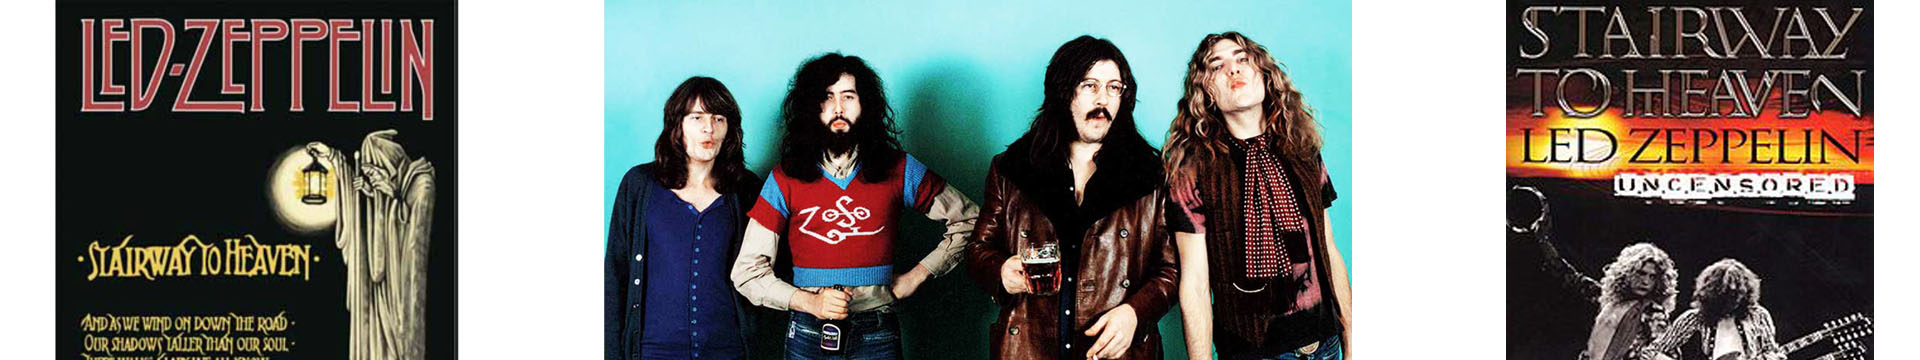 Led Zeppelin1